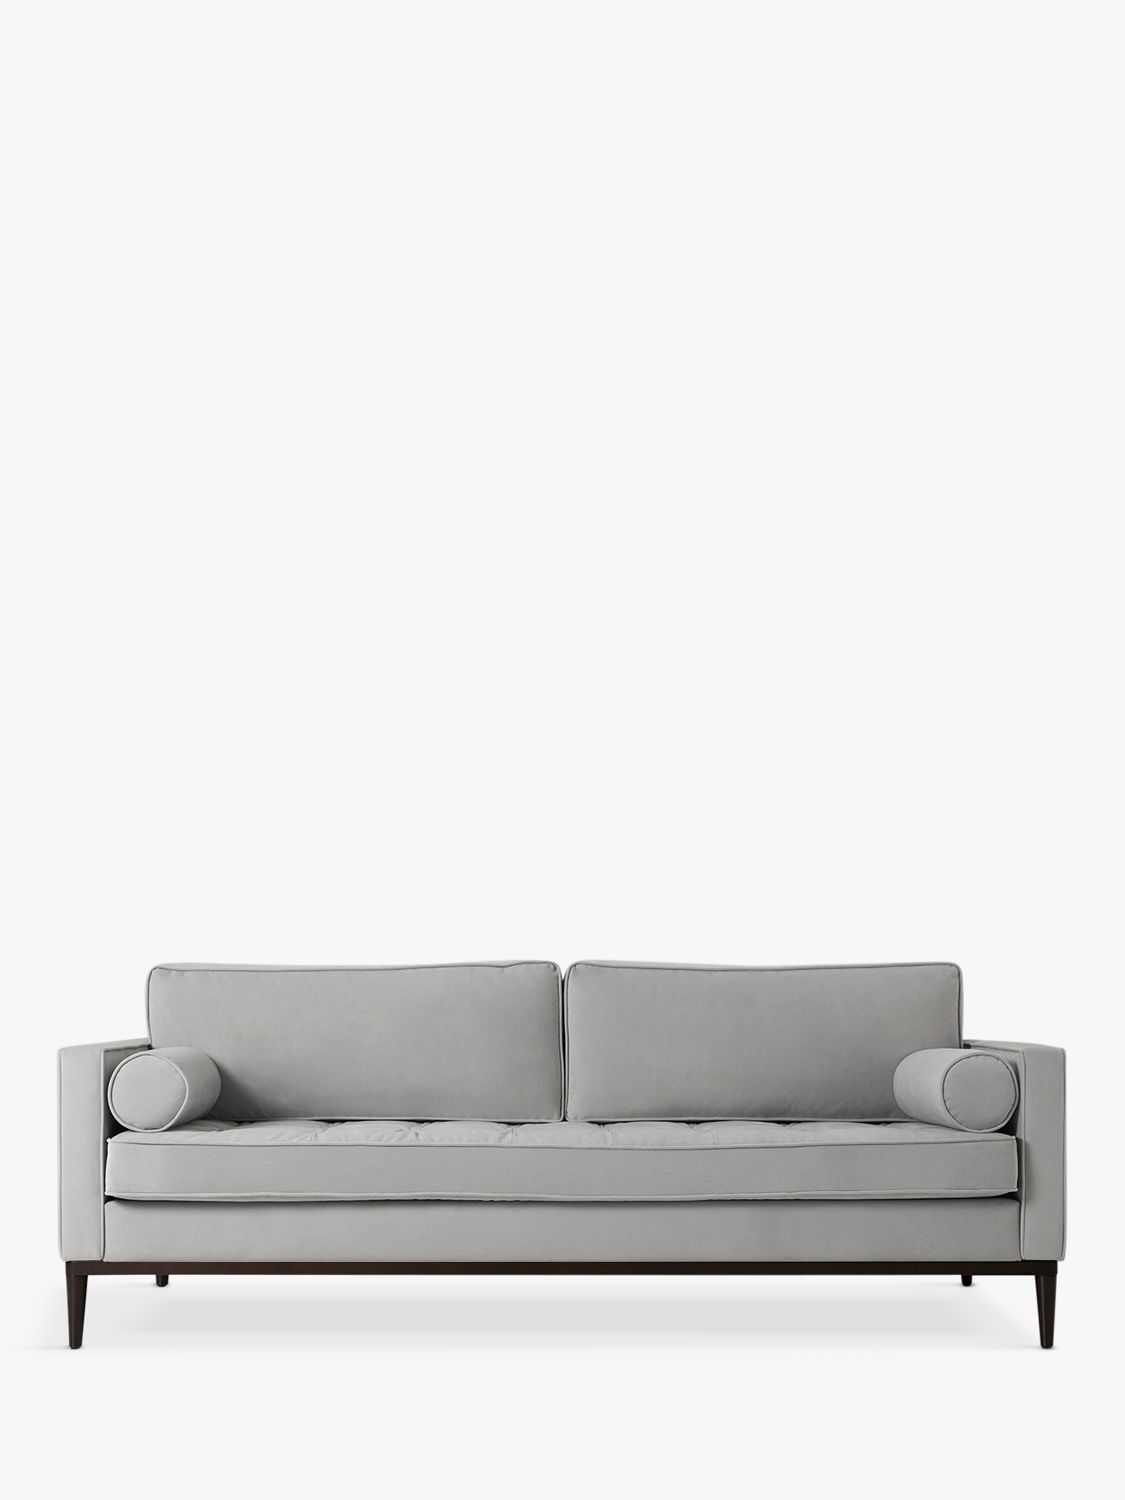 Model 2 Range, Swyft Model 02 Large 3 Seater Sofa Bed, Dark Leg, Velvet Light Grey